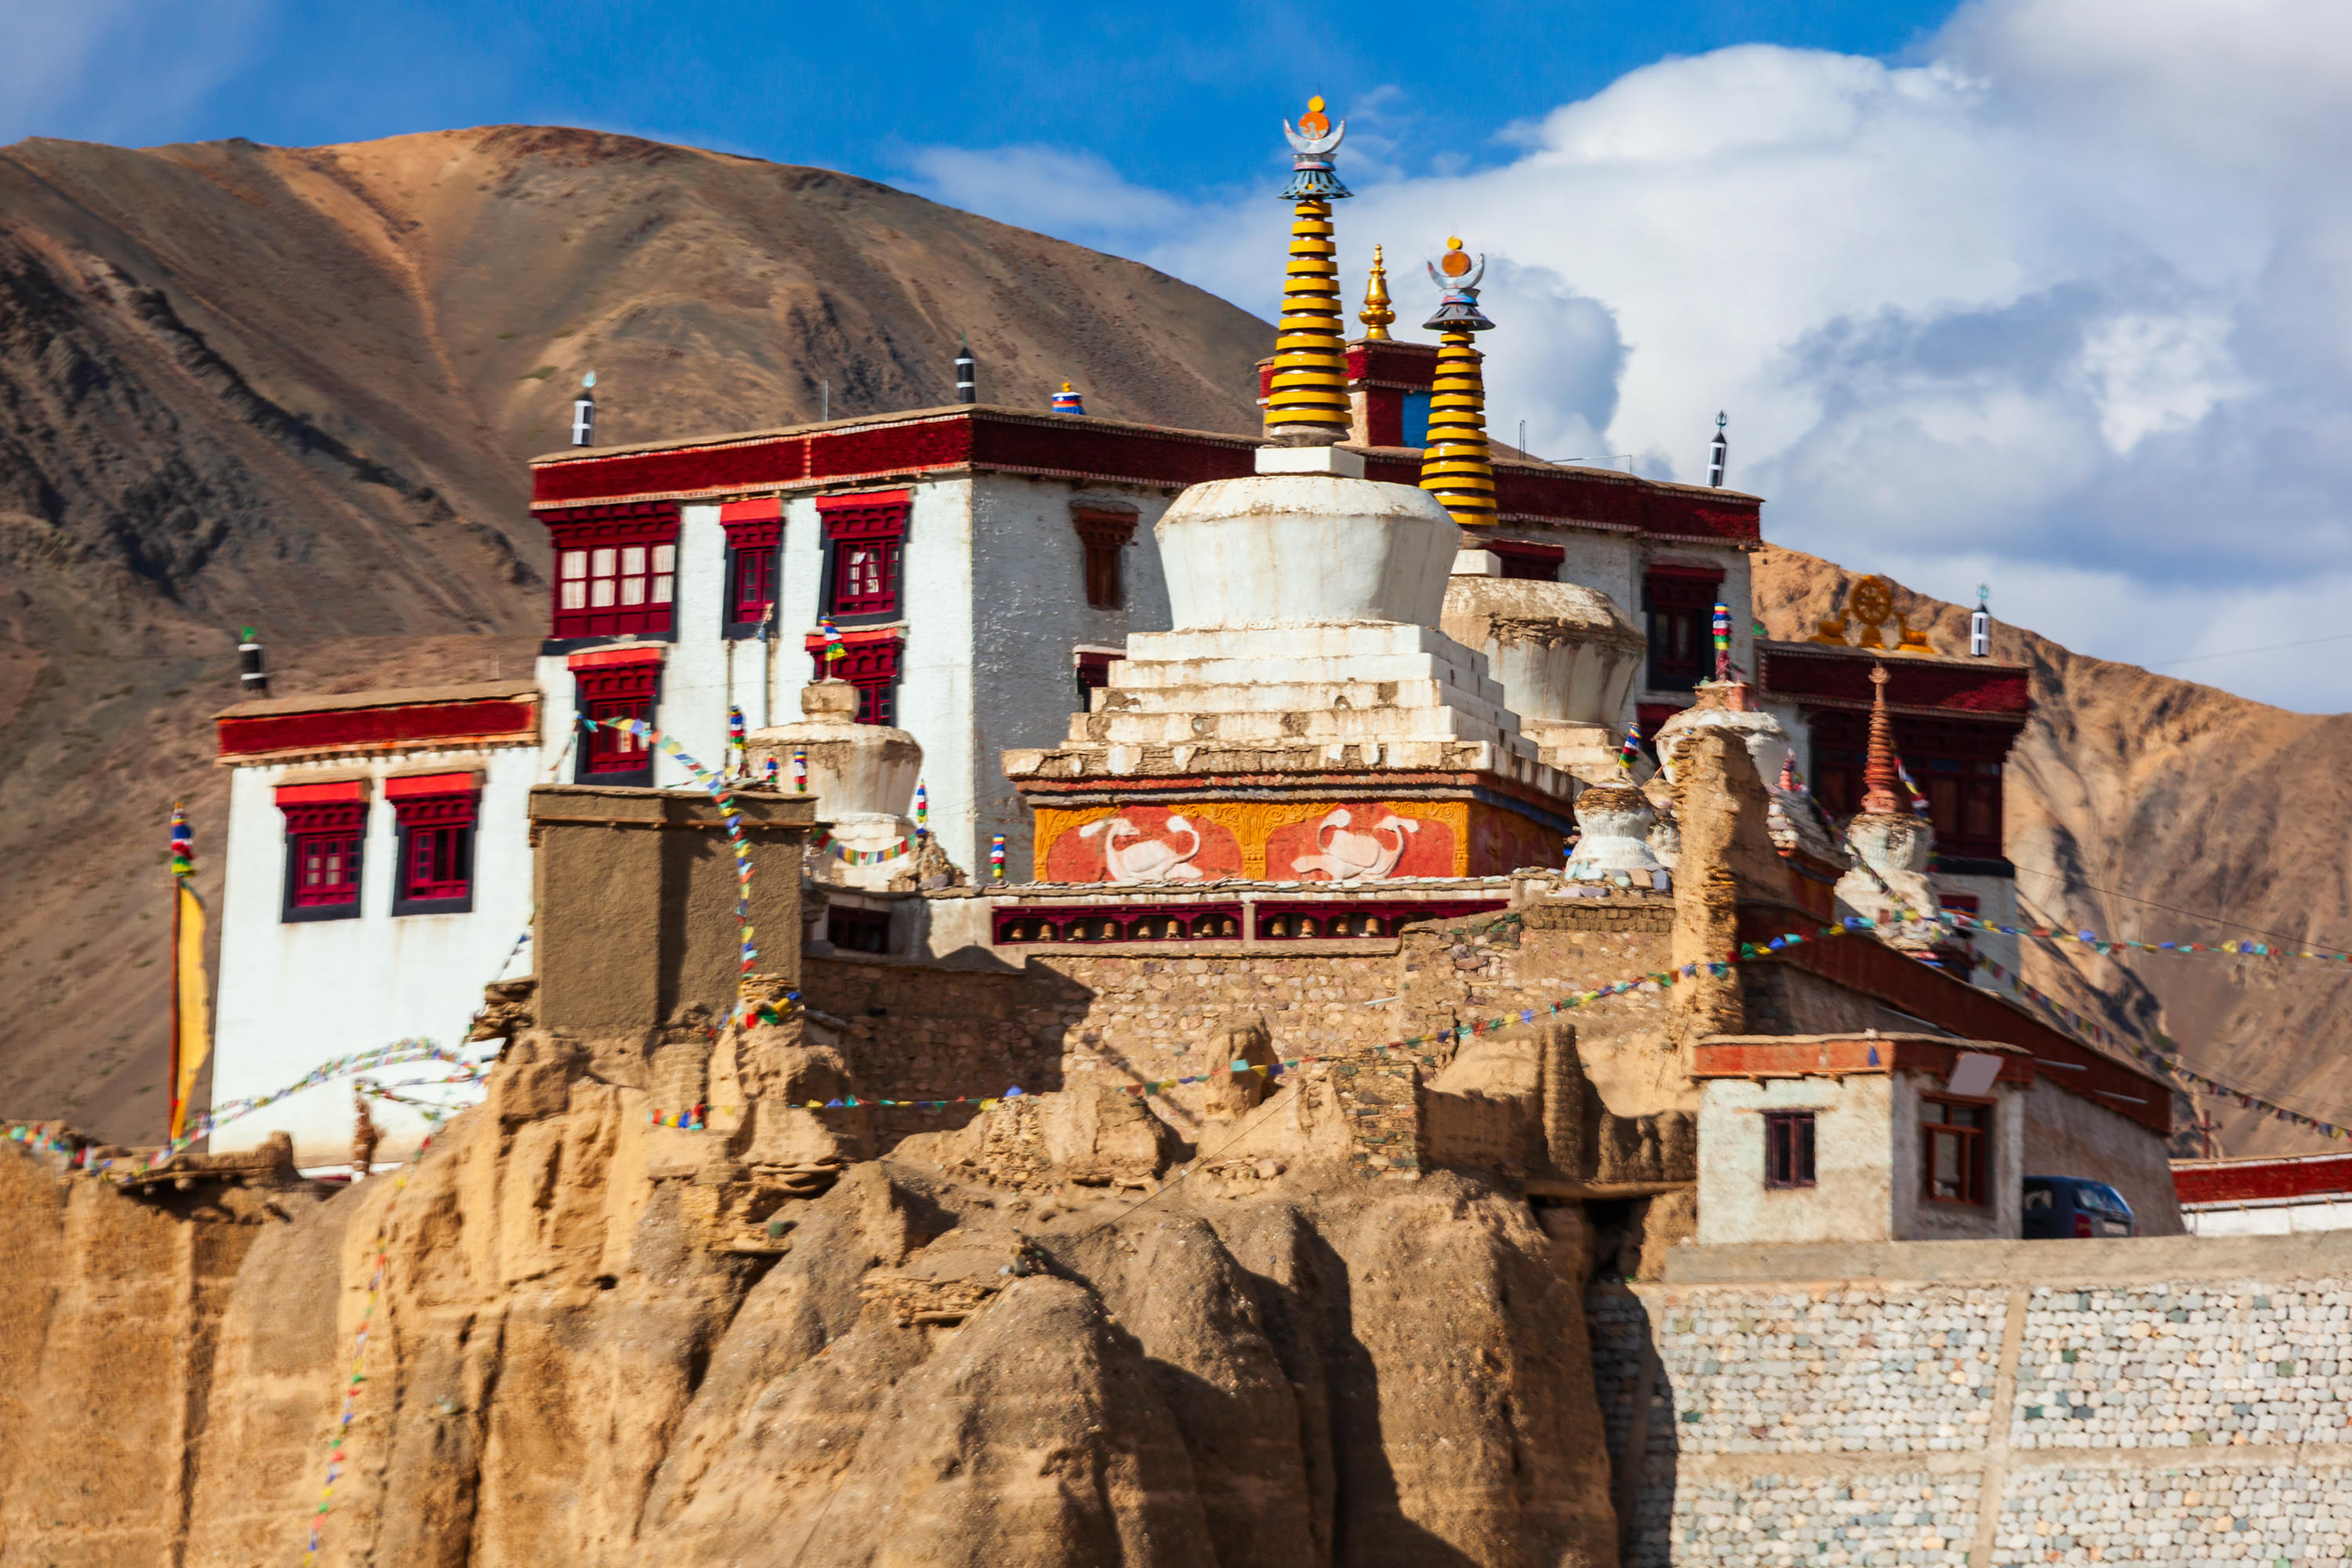 The Nyingma Lhakhang Temple